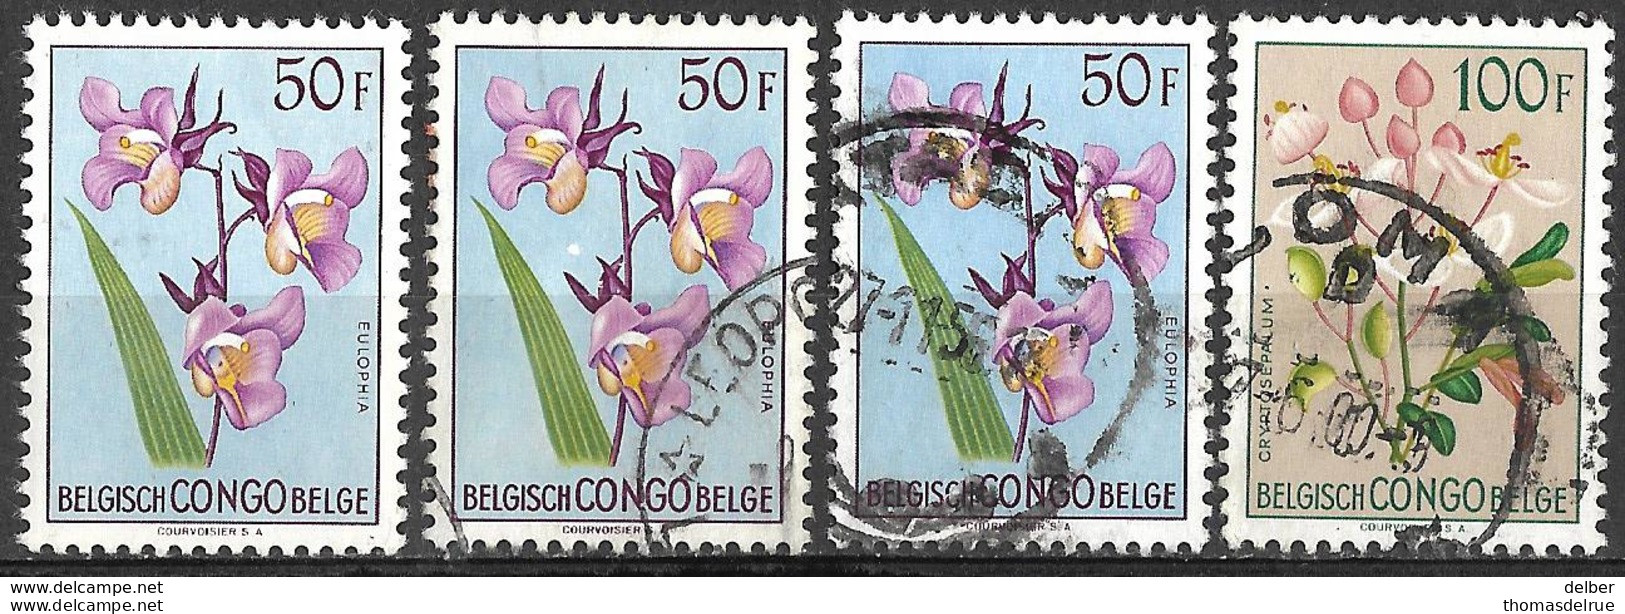 8Bc-966: 4 Zegels: N°322 Postfris  + 322 + 322 + 323 Gestempeld... - Unused Stamps